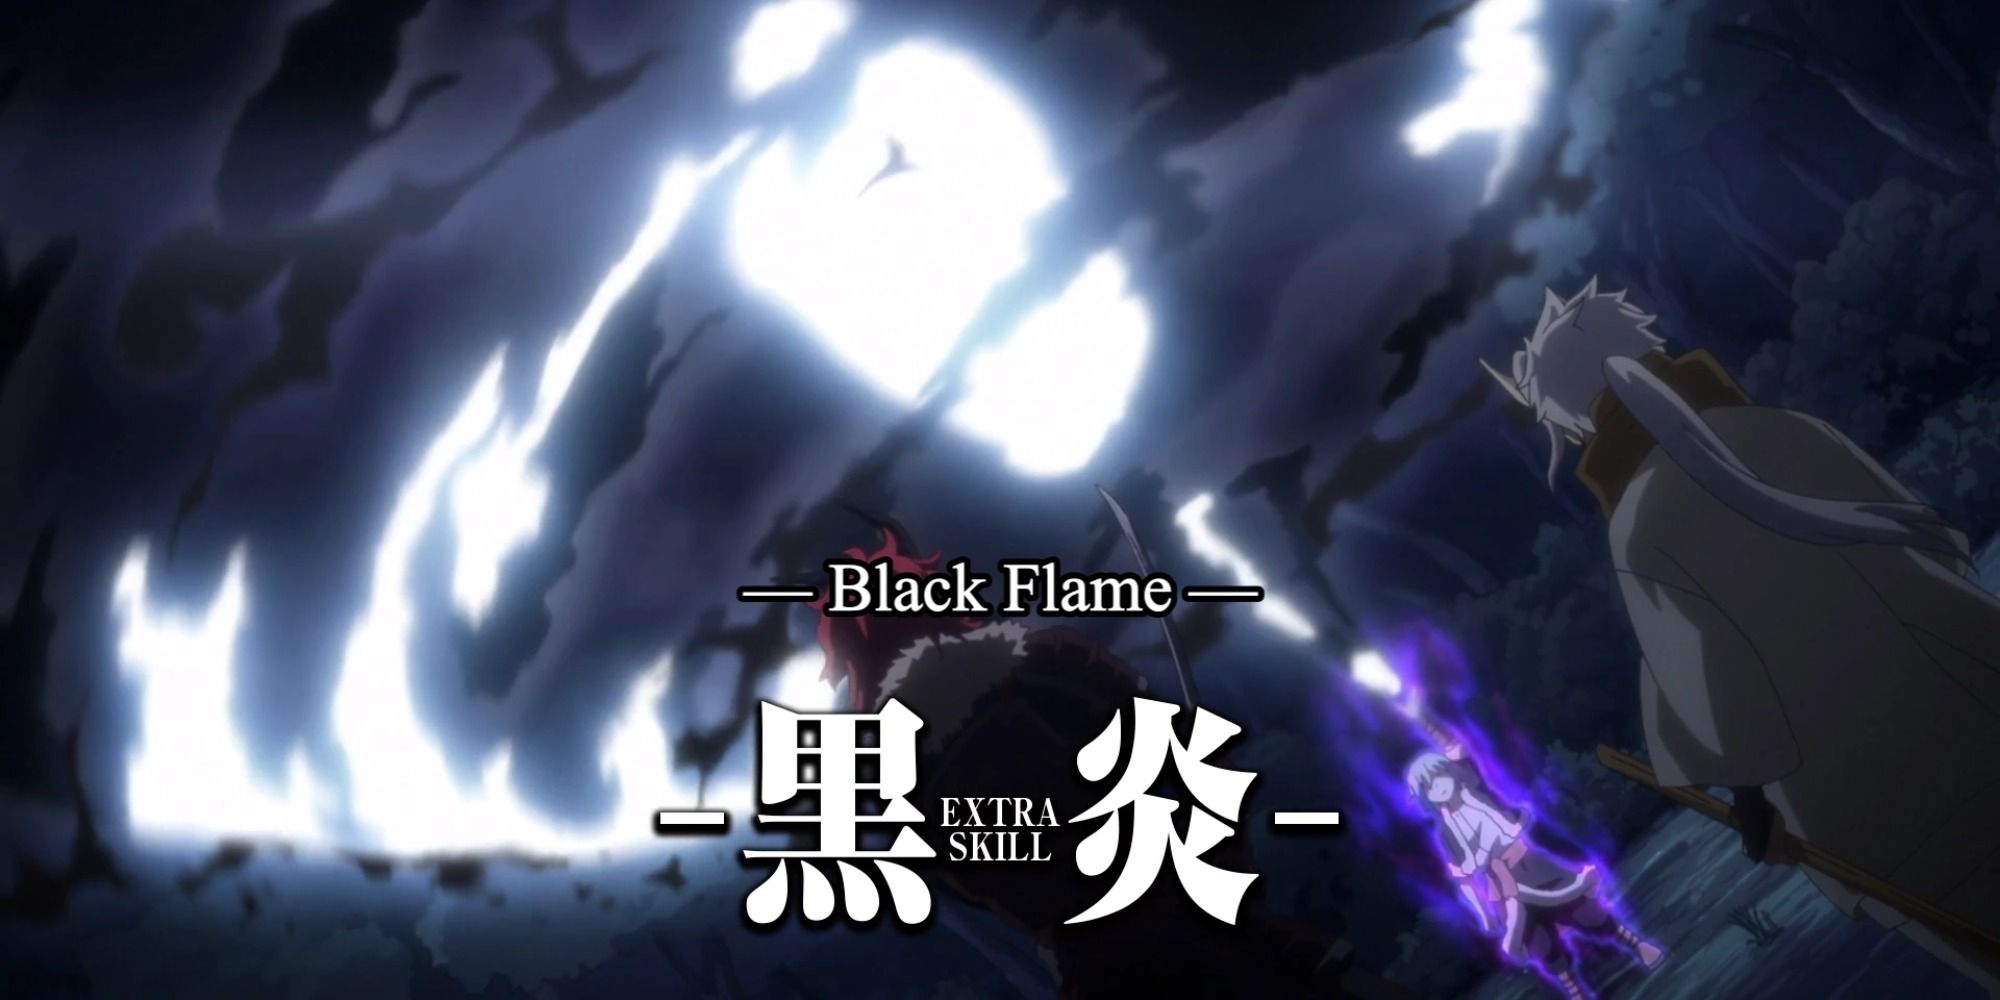 rimuru's dark flame ability